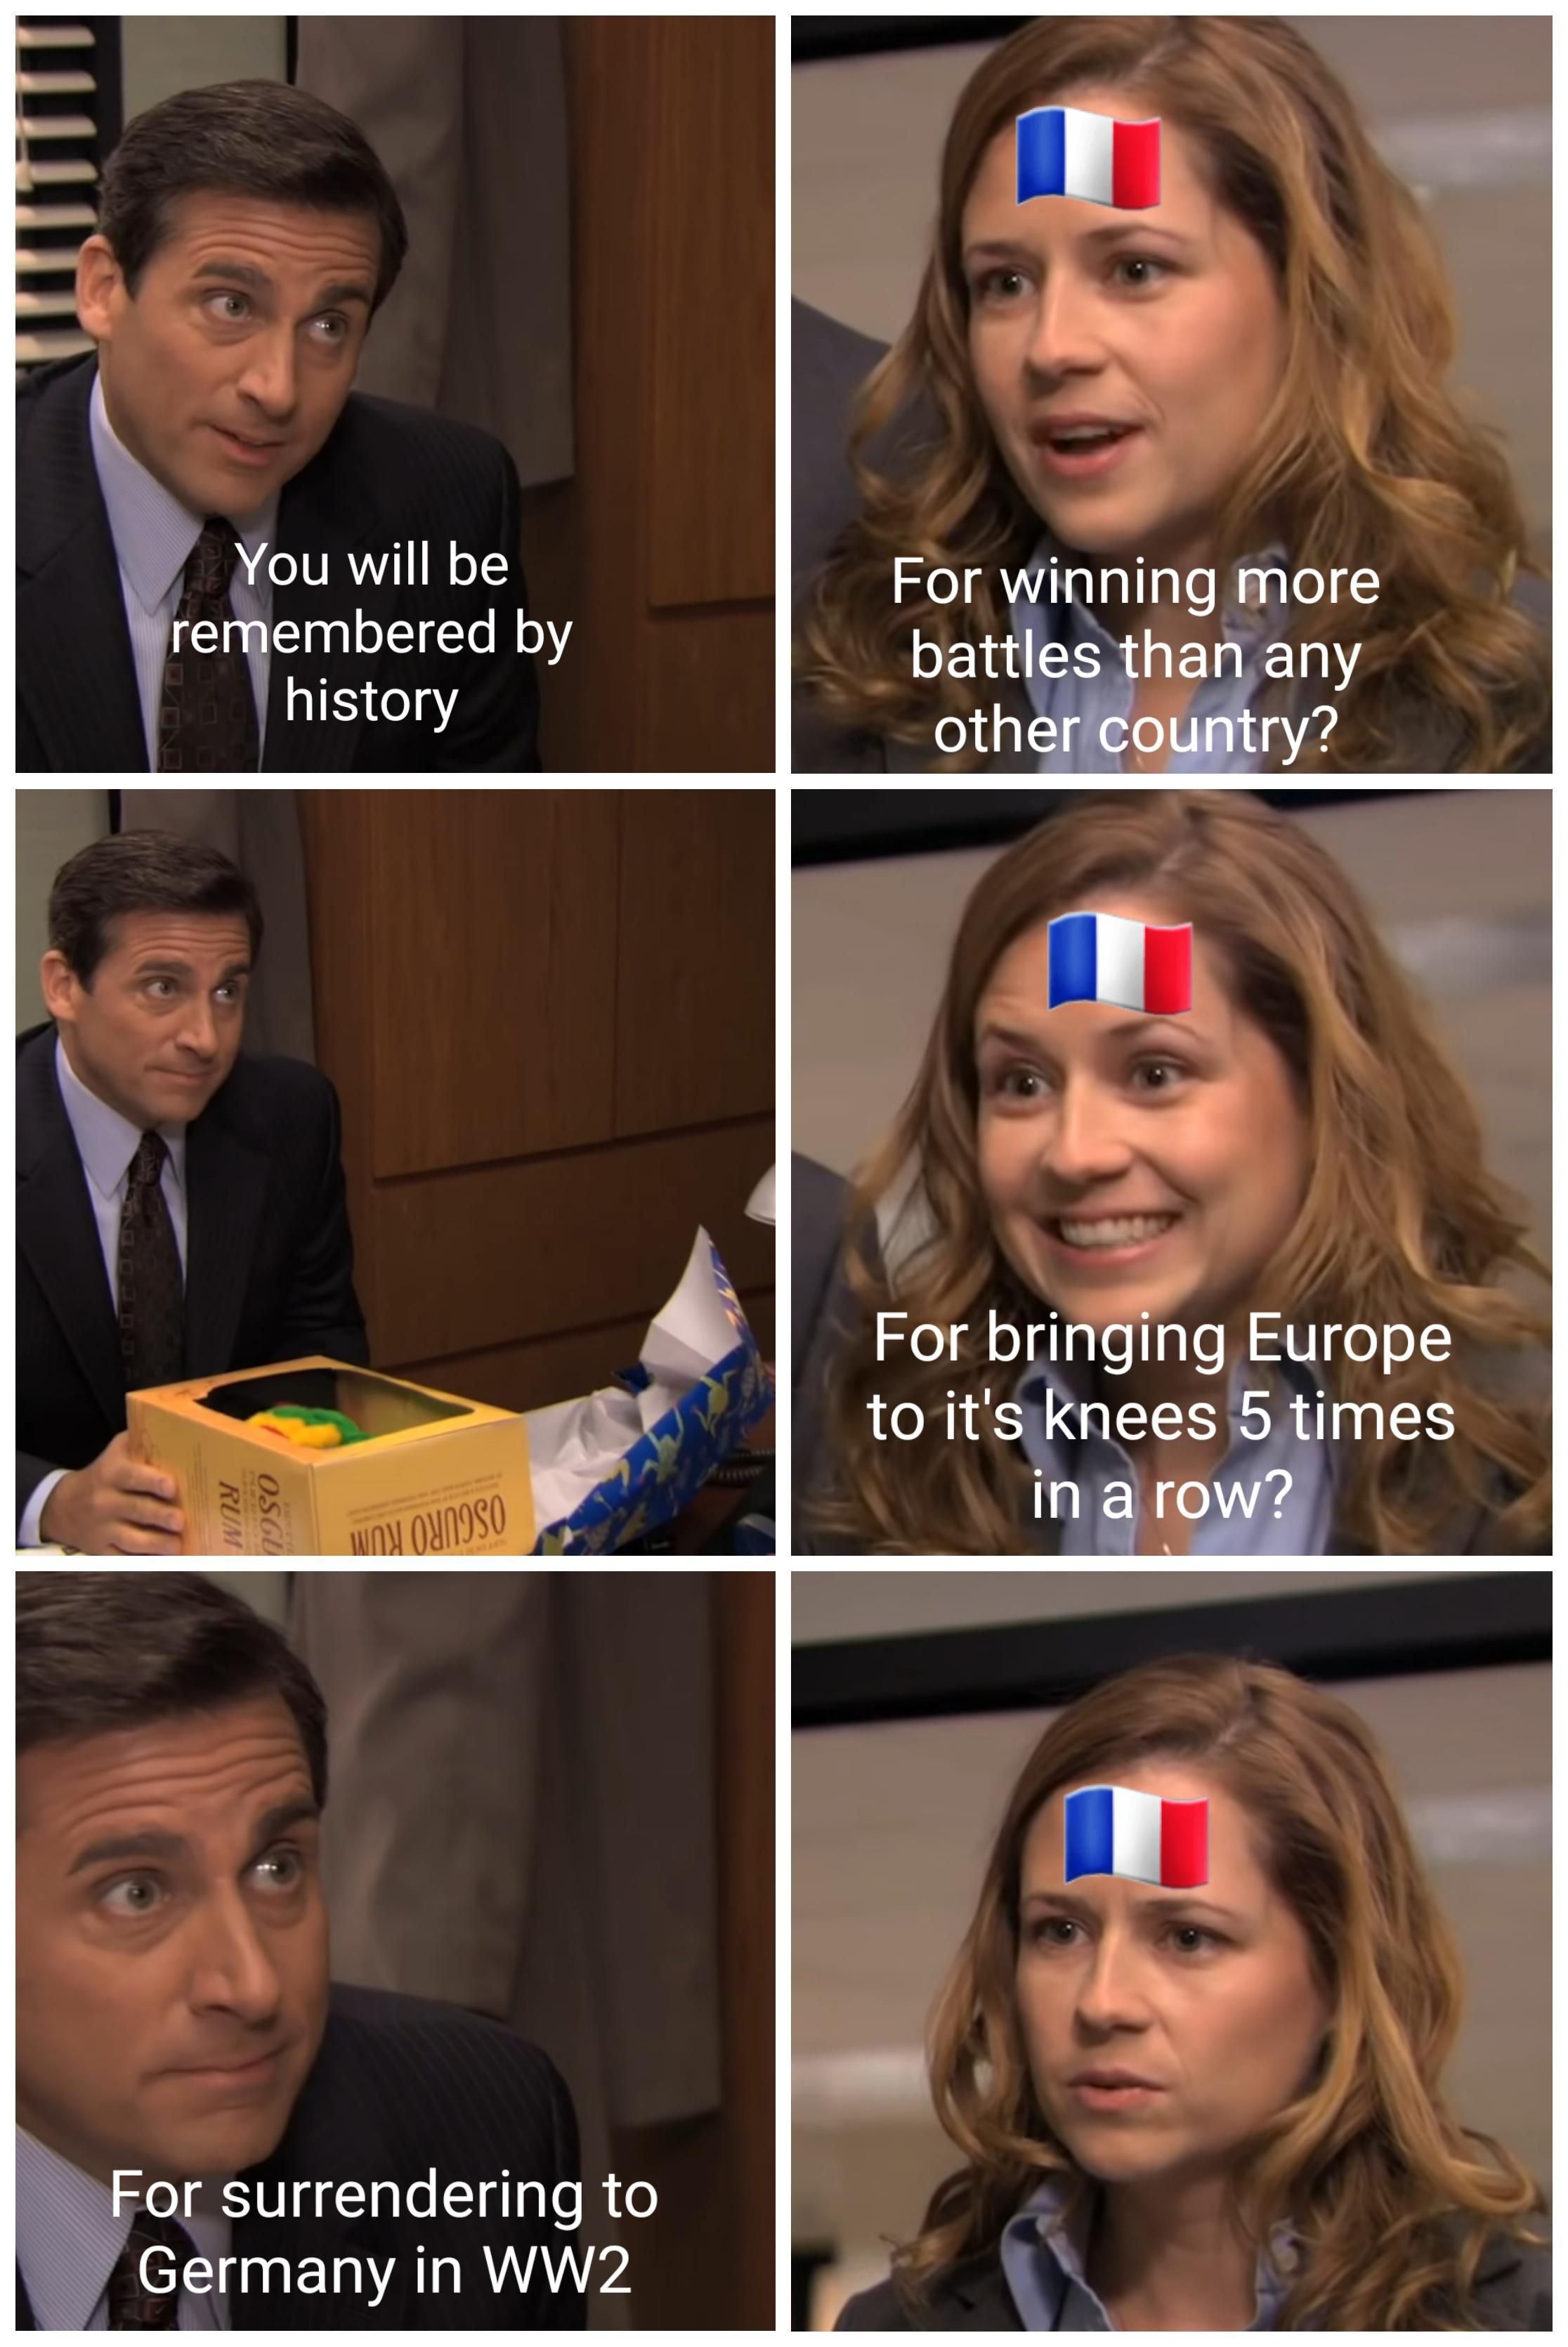 France deserves some respect